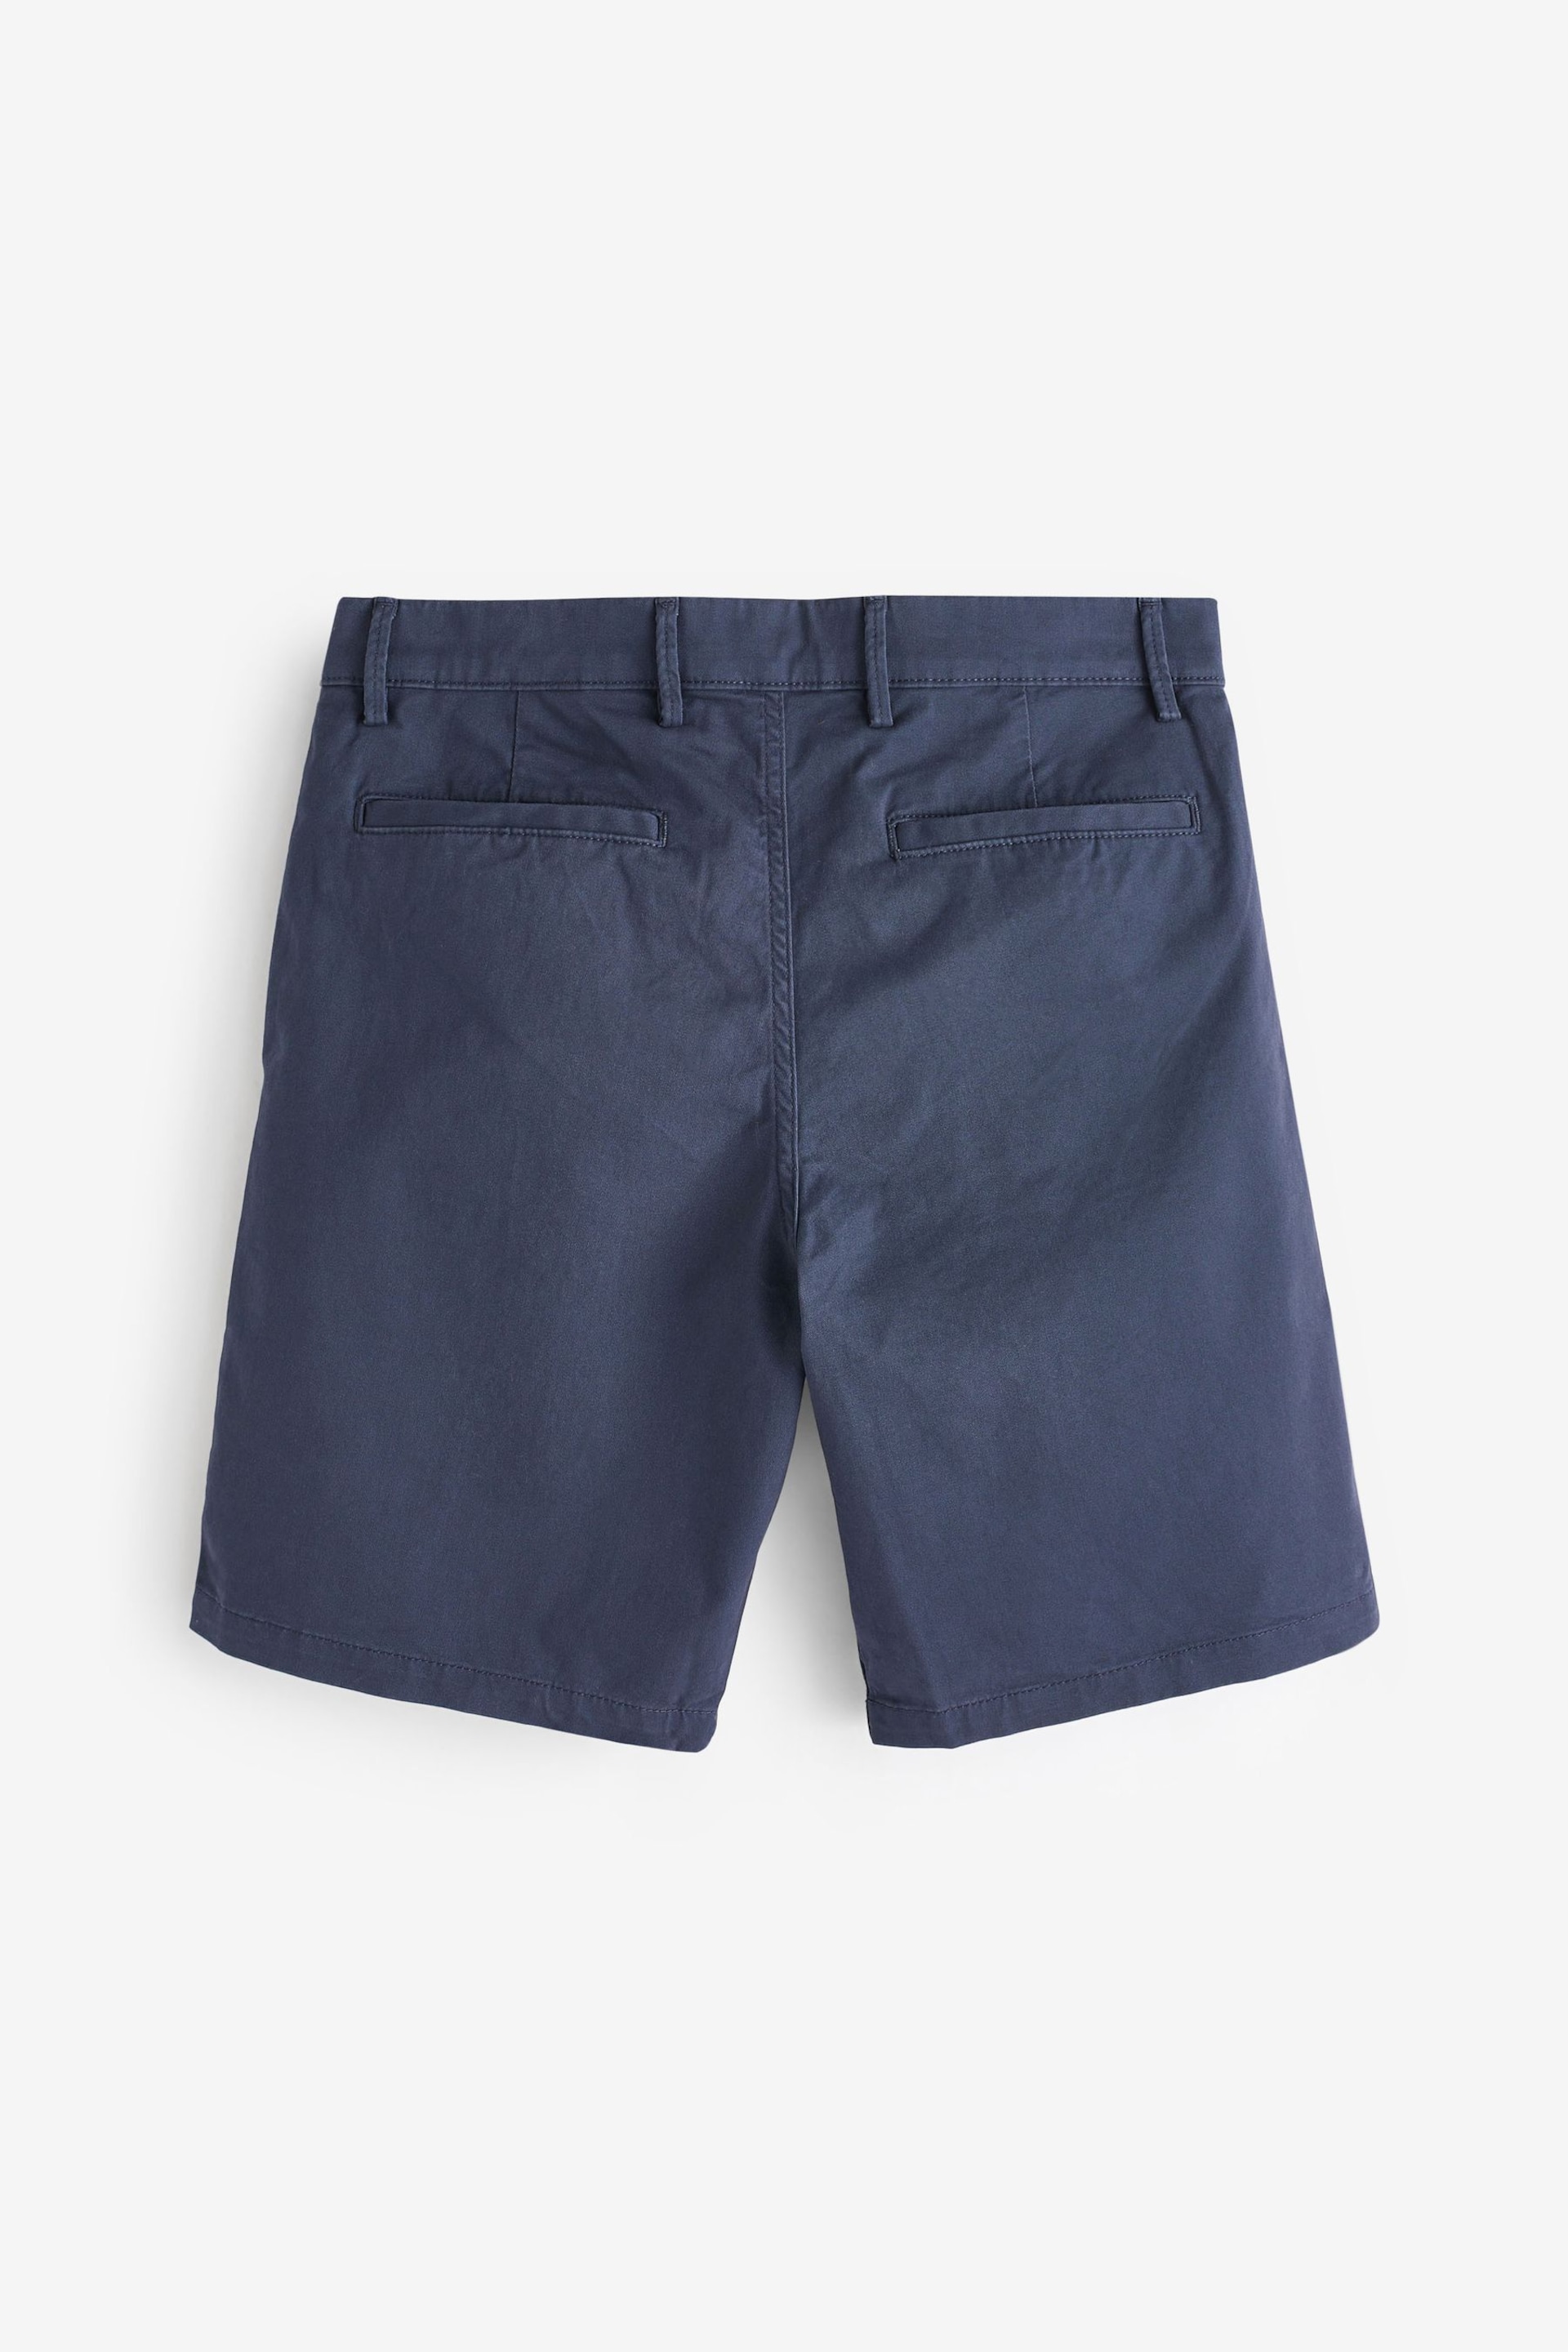 Gap Navy Blue Long Length Chino Shorts - Image 4 of 6